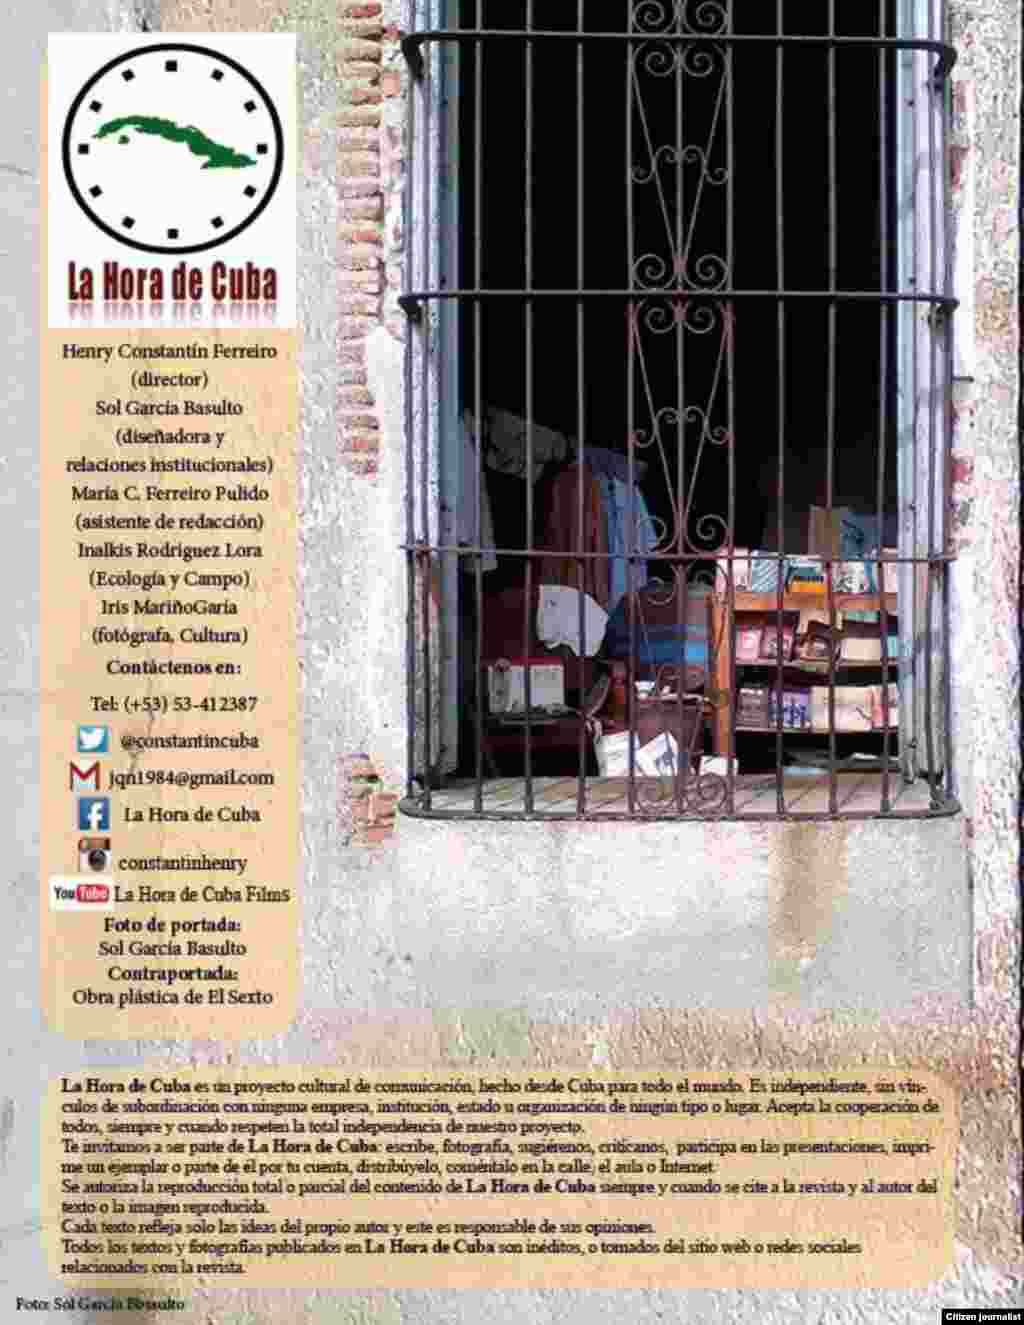 La Hora de Cuba en su septima edición